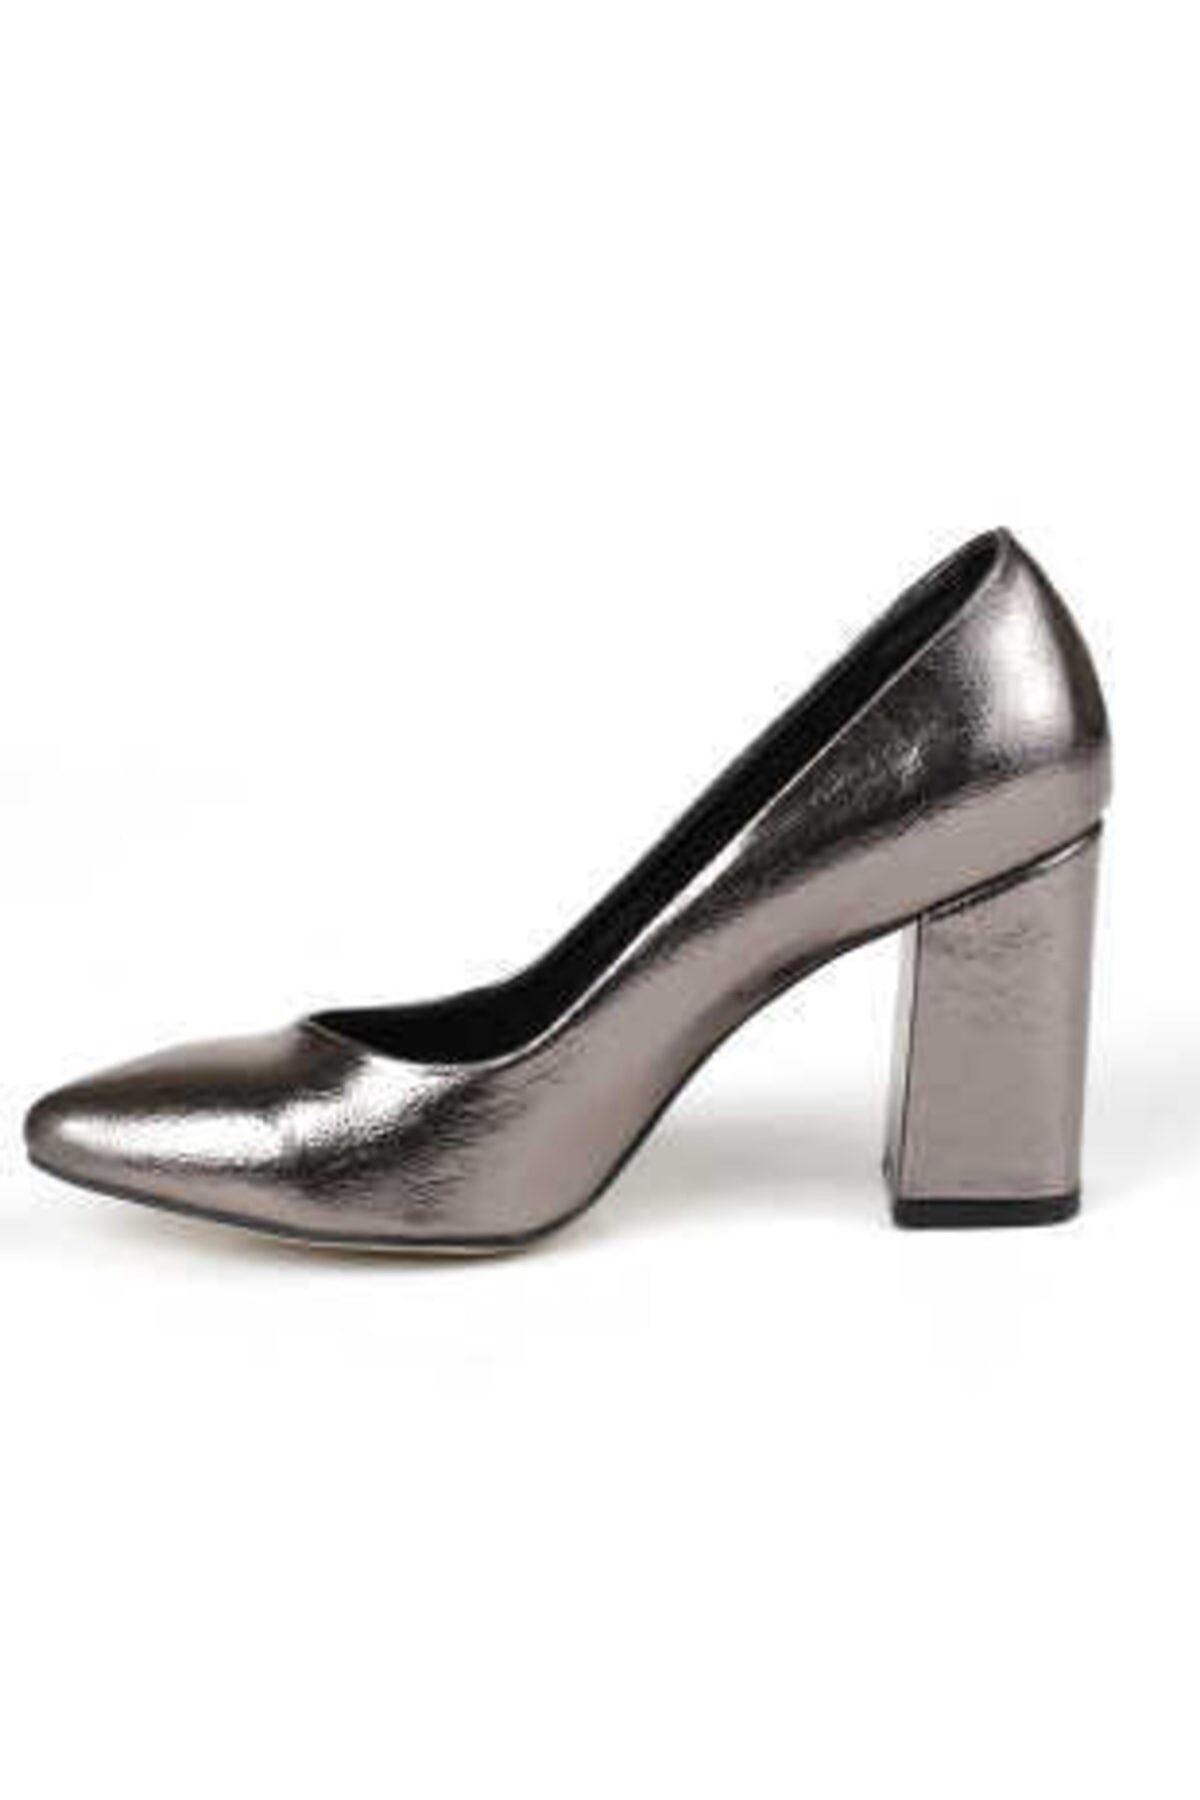 Kadın Topuklu Ayakkabı Perla Gate Shoes -Platin